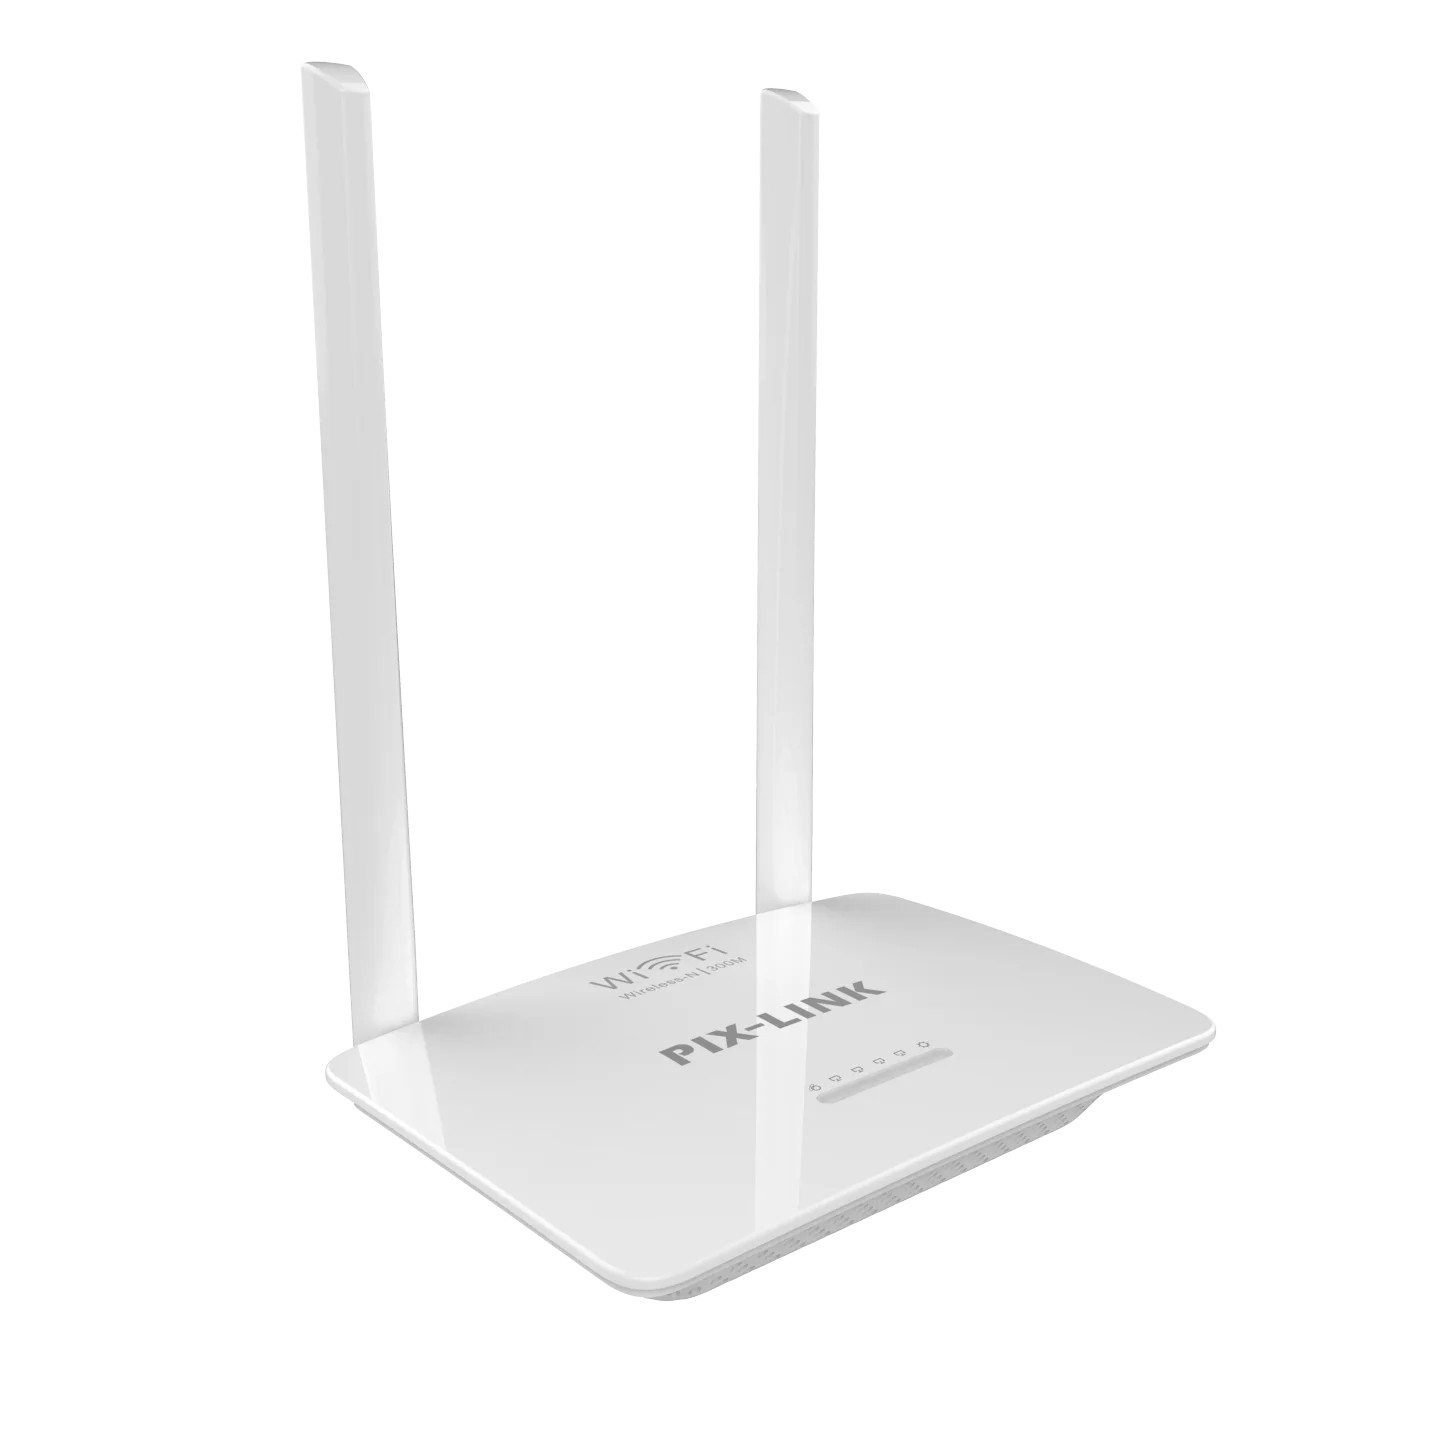 PIX-Liên Kết Không Dây Tốc Độ 300Mbps-N WR07 Mạng Router Wifi Cho Nhà Sử Dụng Tín Hiệu Kích Sóng Repeater Wifi Router wifi amplifier 5g